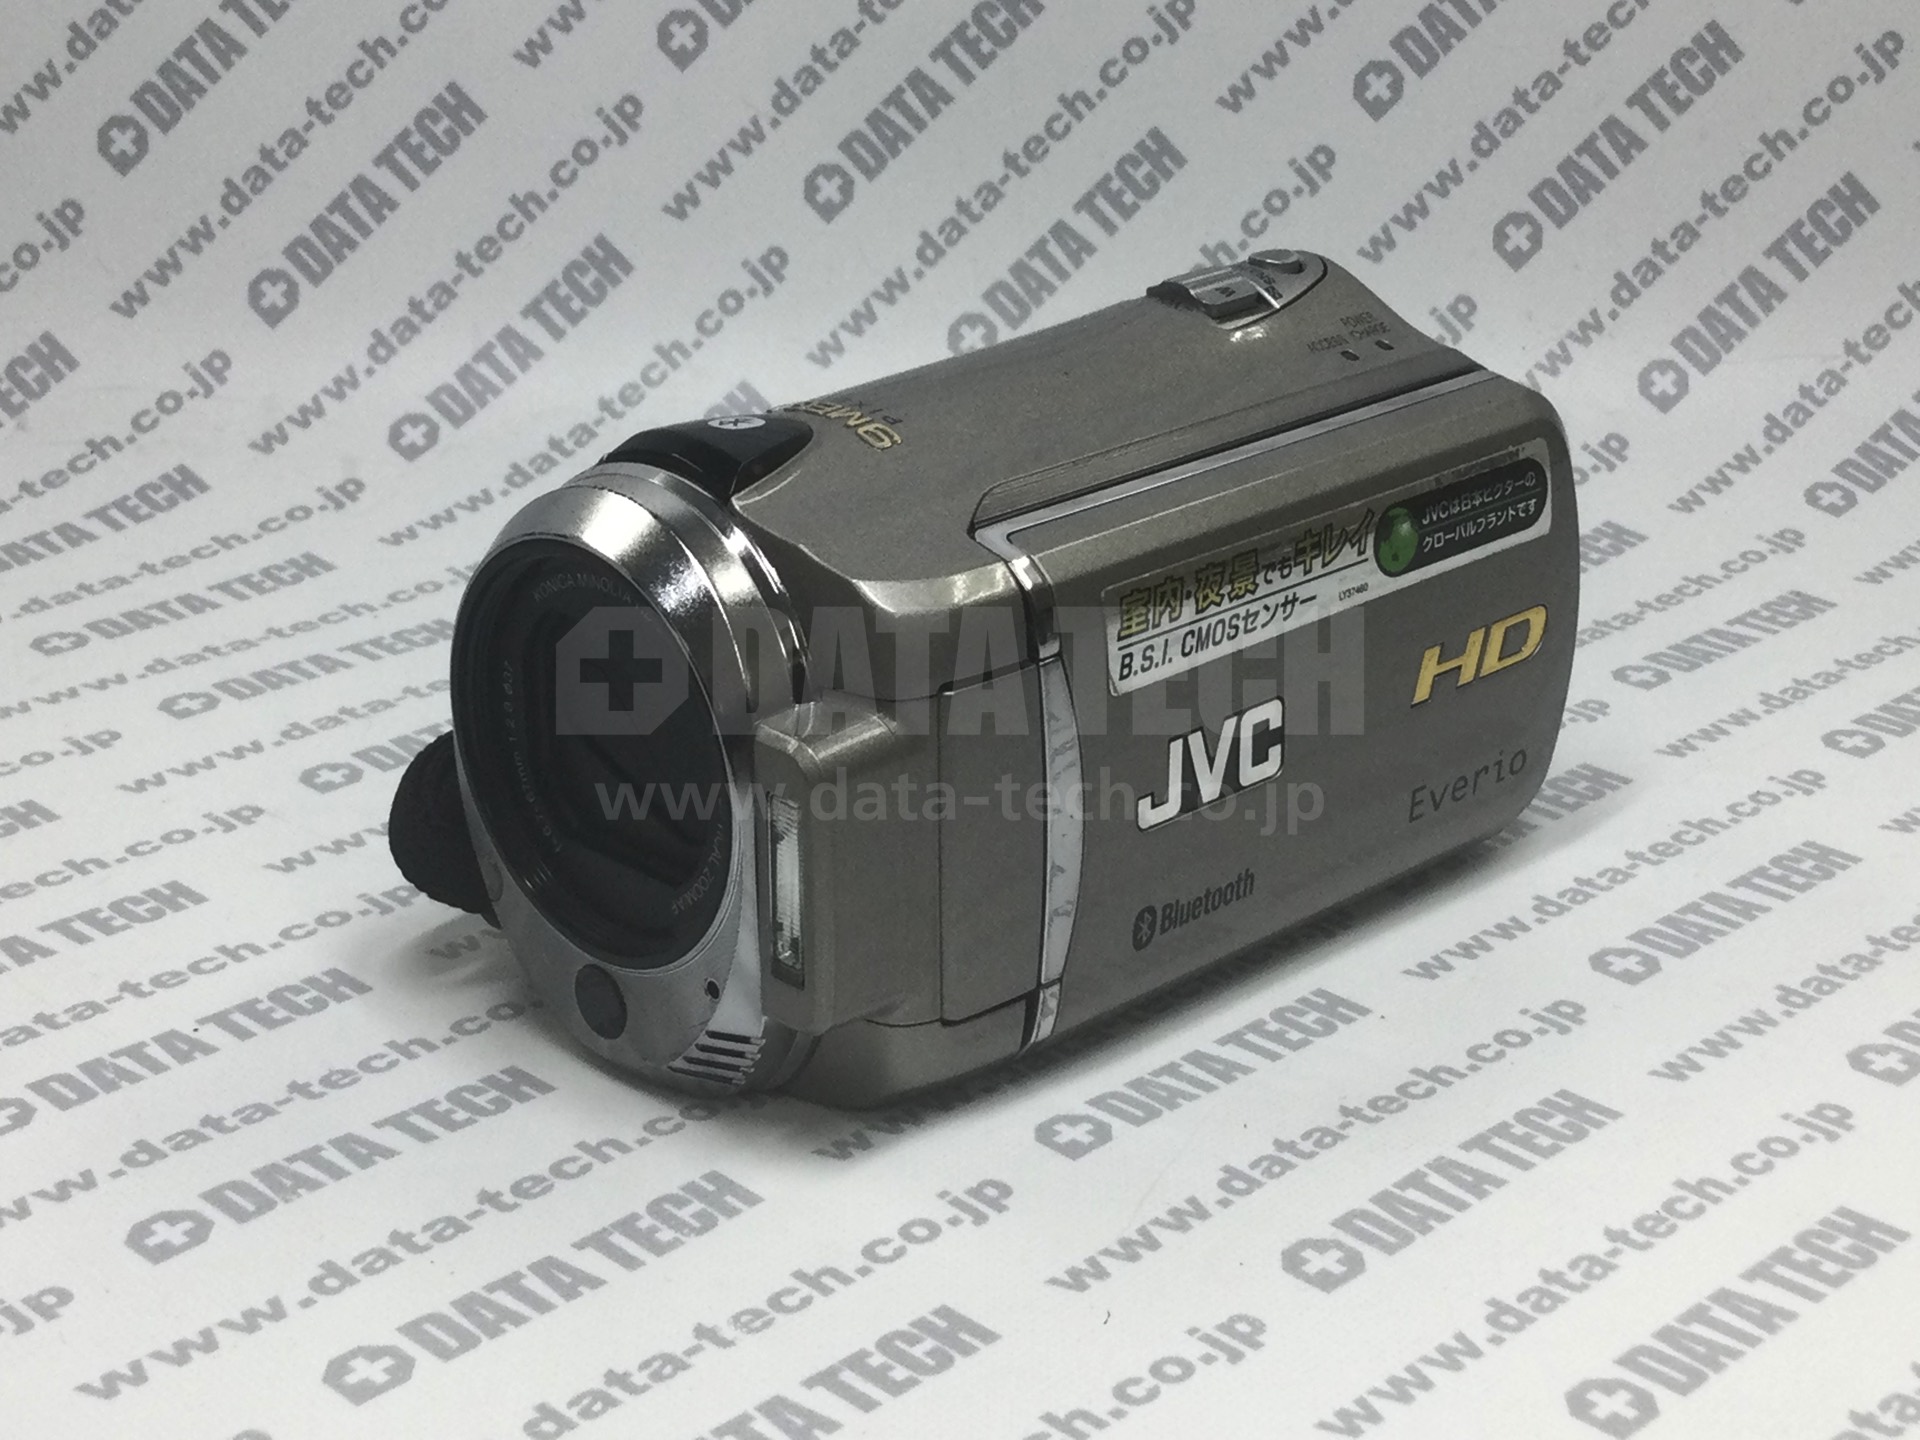 データ復旧 成功実績】ビデオカメラ JVC Victor GZ-HM570-S 液晶画面が